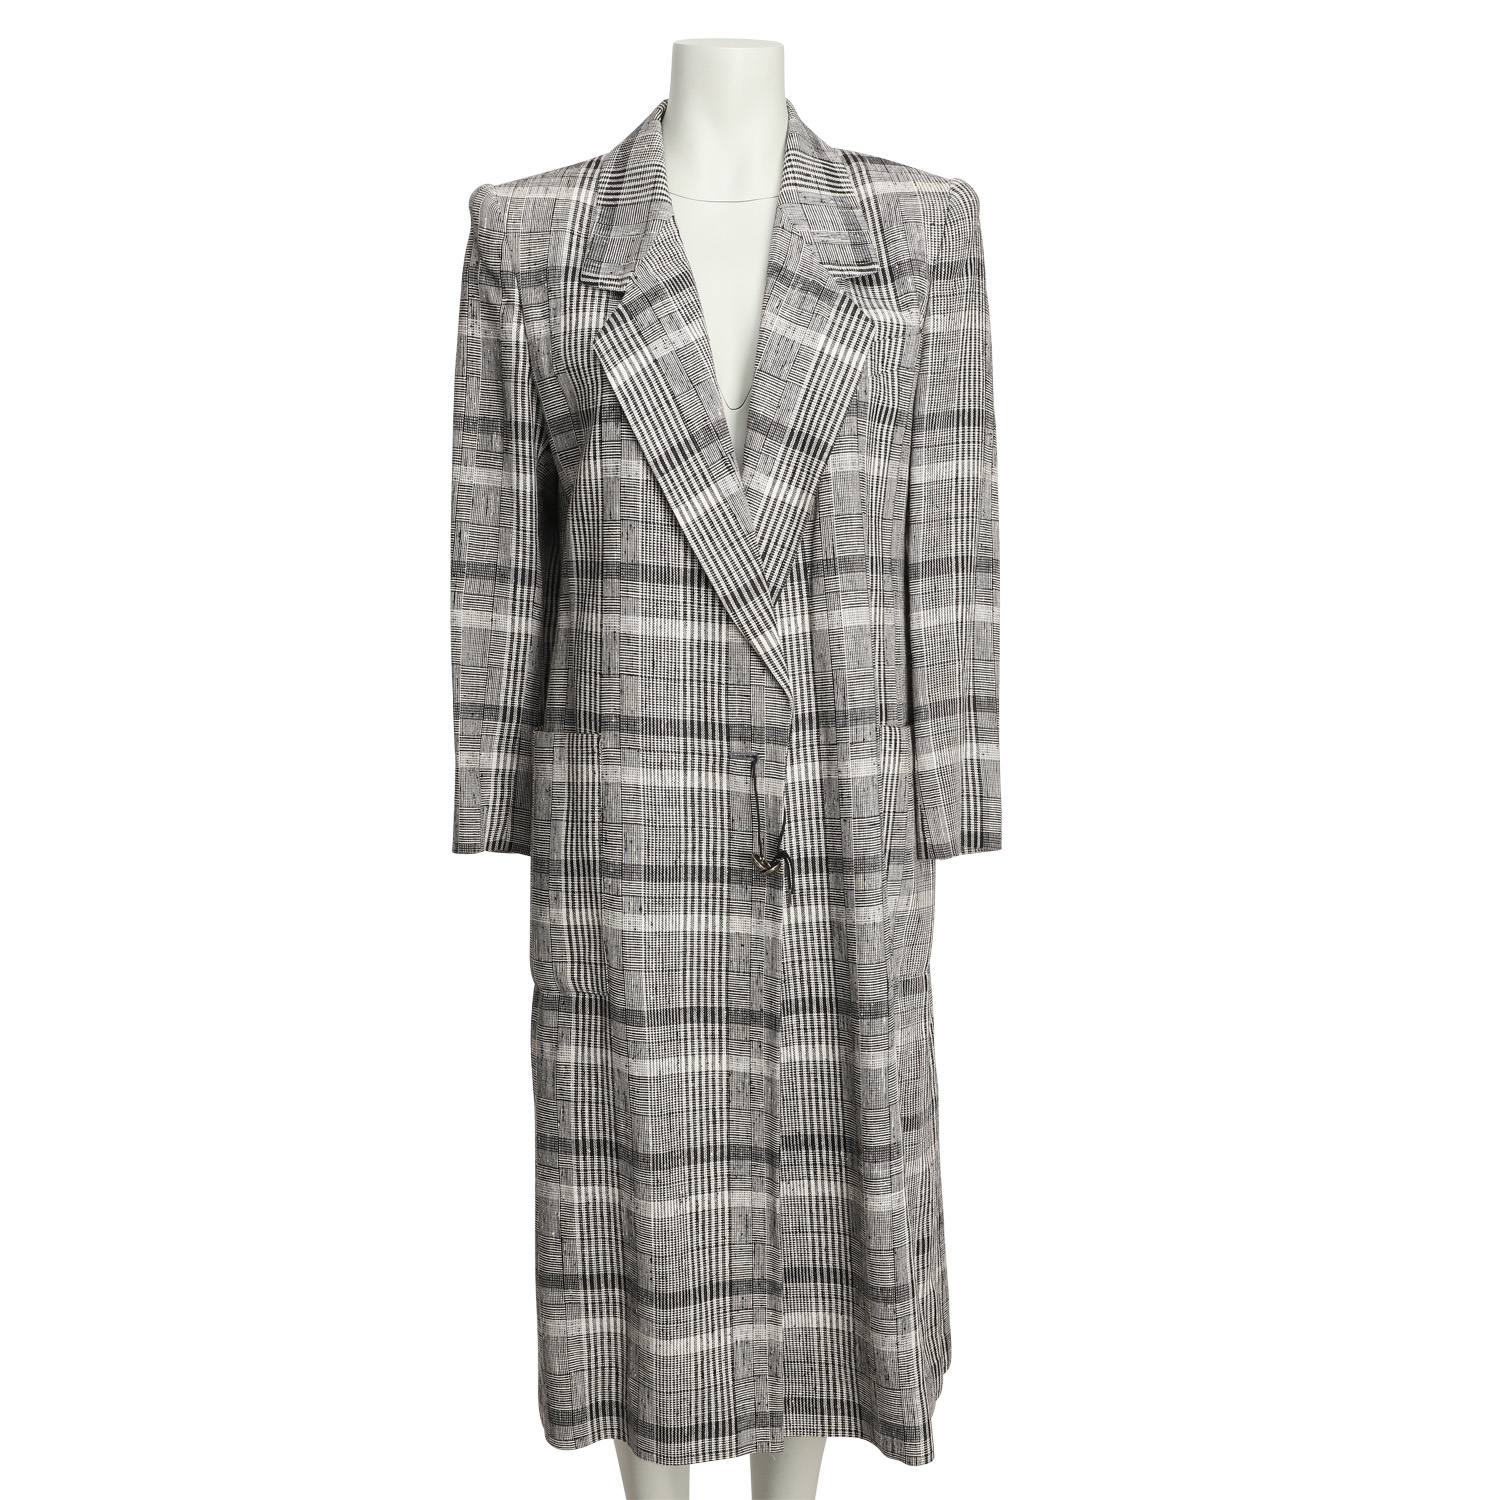 Louis Feraud, Jackets & Coats, Louis Feraud Double Breasted Wool Coat